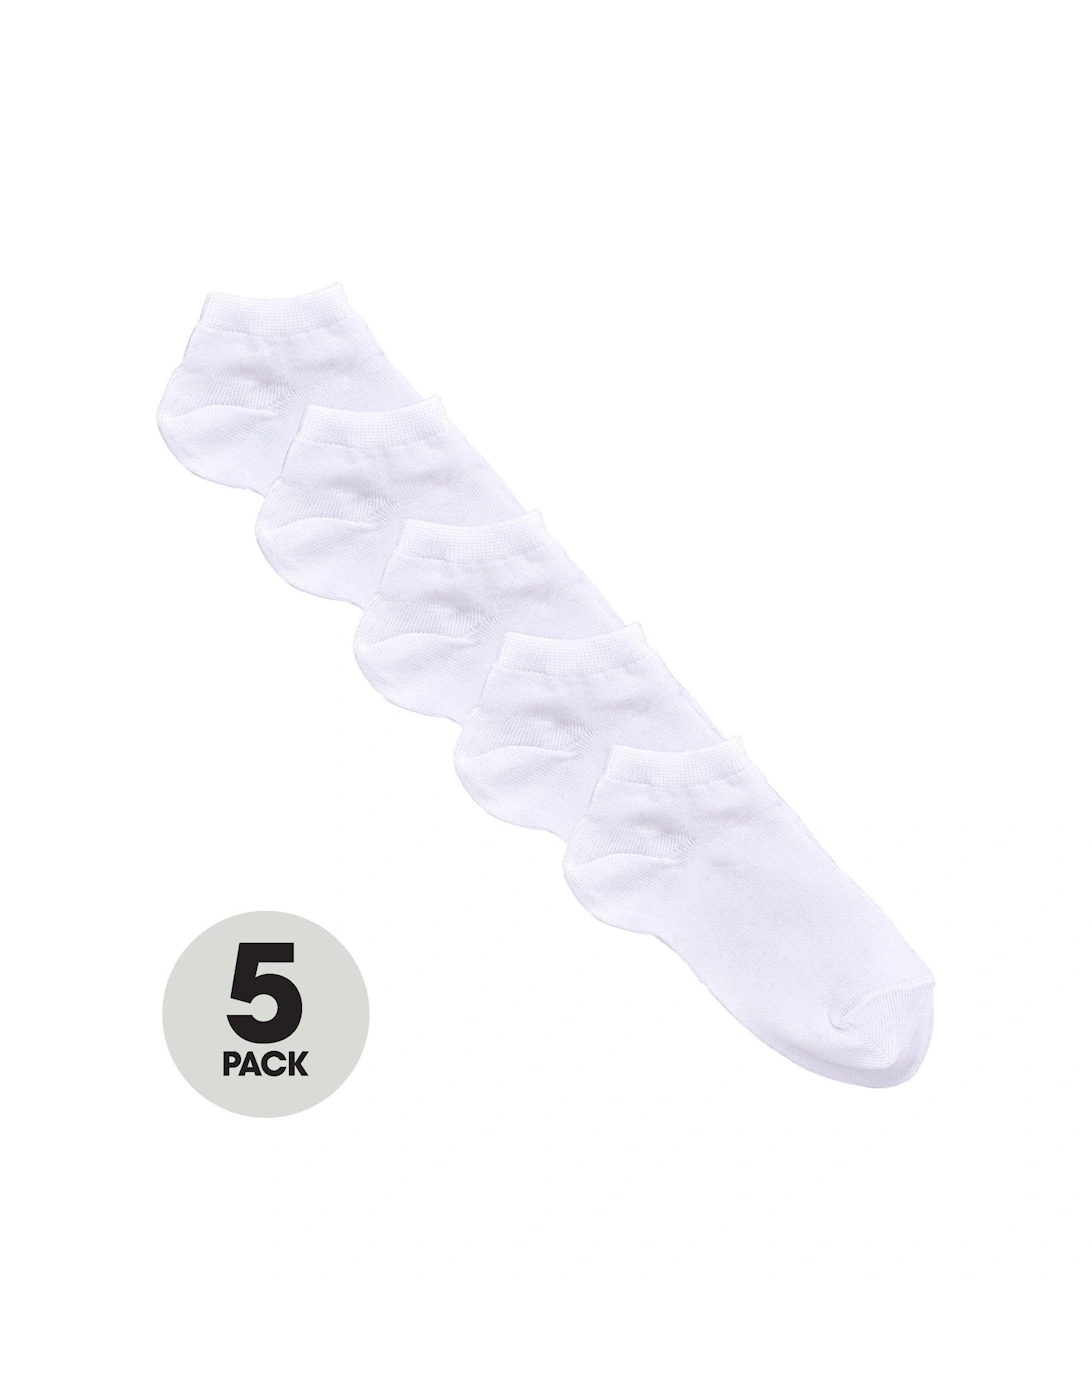 5 Pack Unisex Trainer Liner Socks - White, 2 of 1